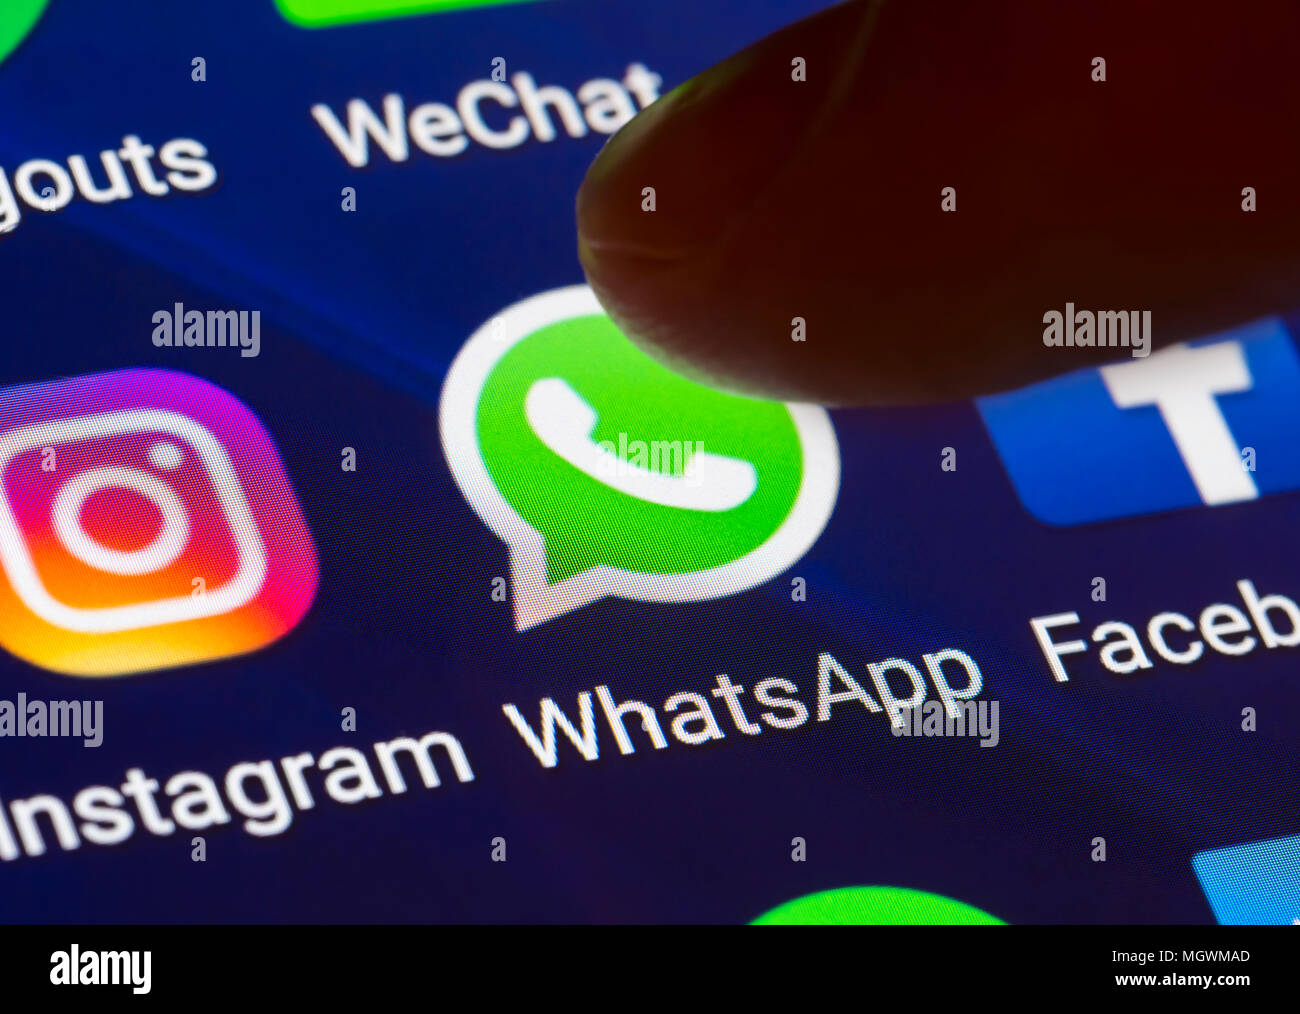 Icône Whatsapp. Doigt qui appuie sur une icône de raccourci pour charger l'application WhatsApp sur une tablette ou smartphone écran. Bouton de Whatsapp. Banque D'Images